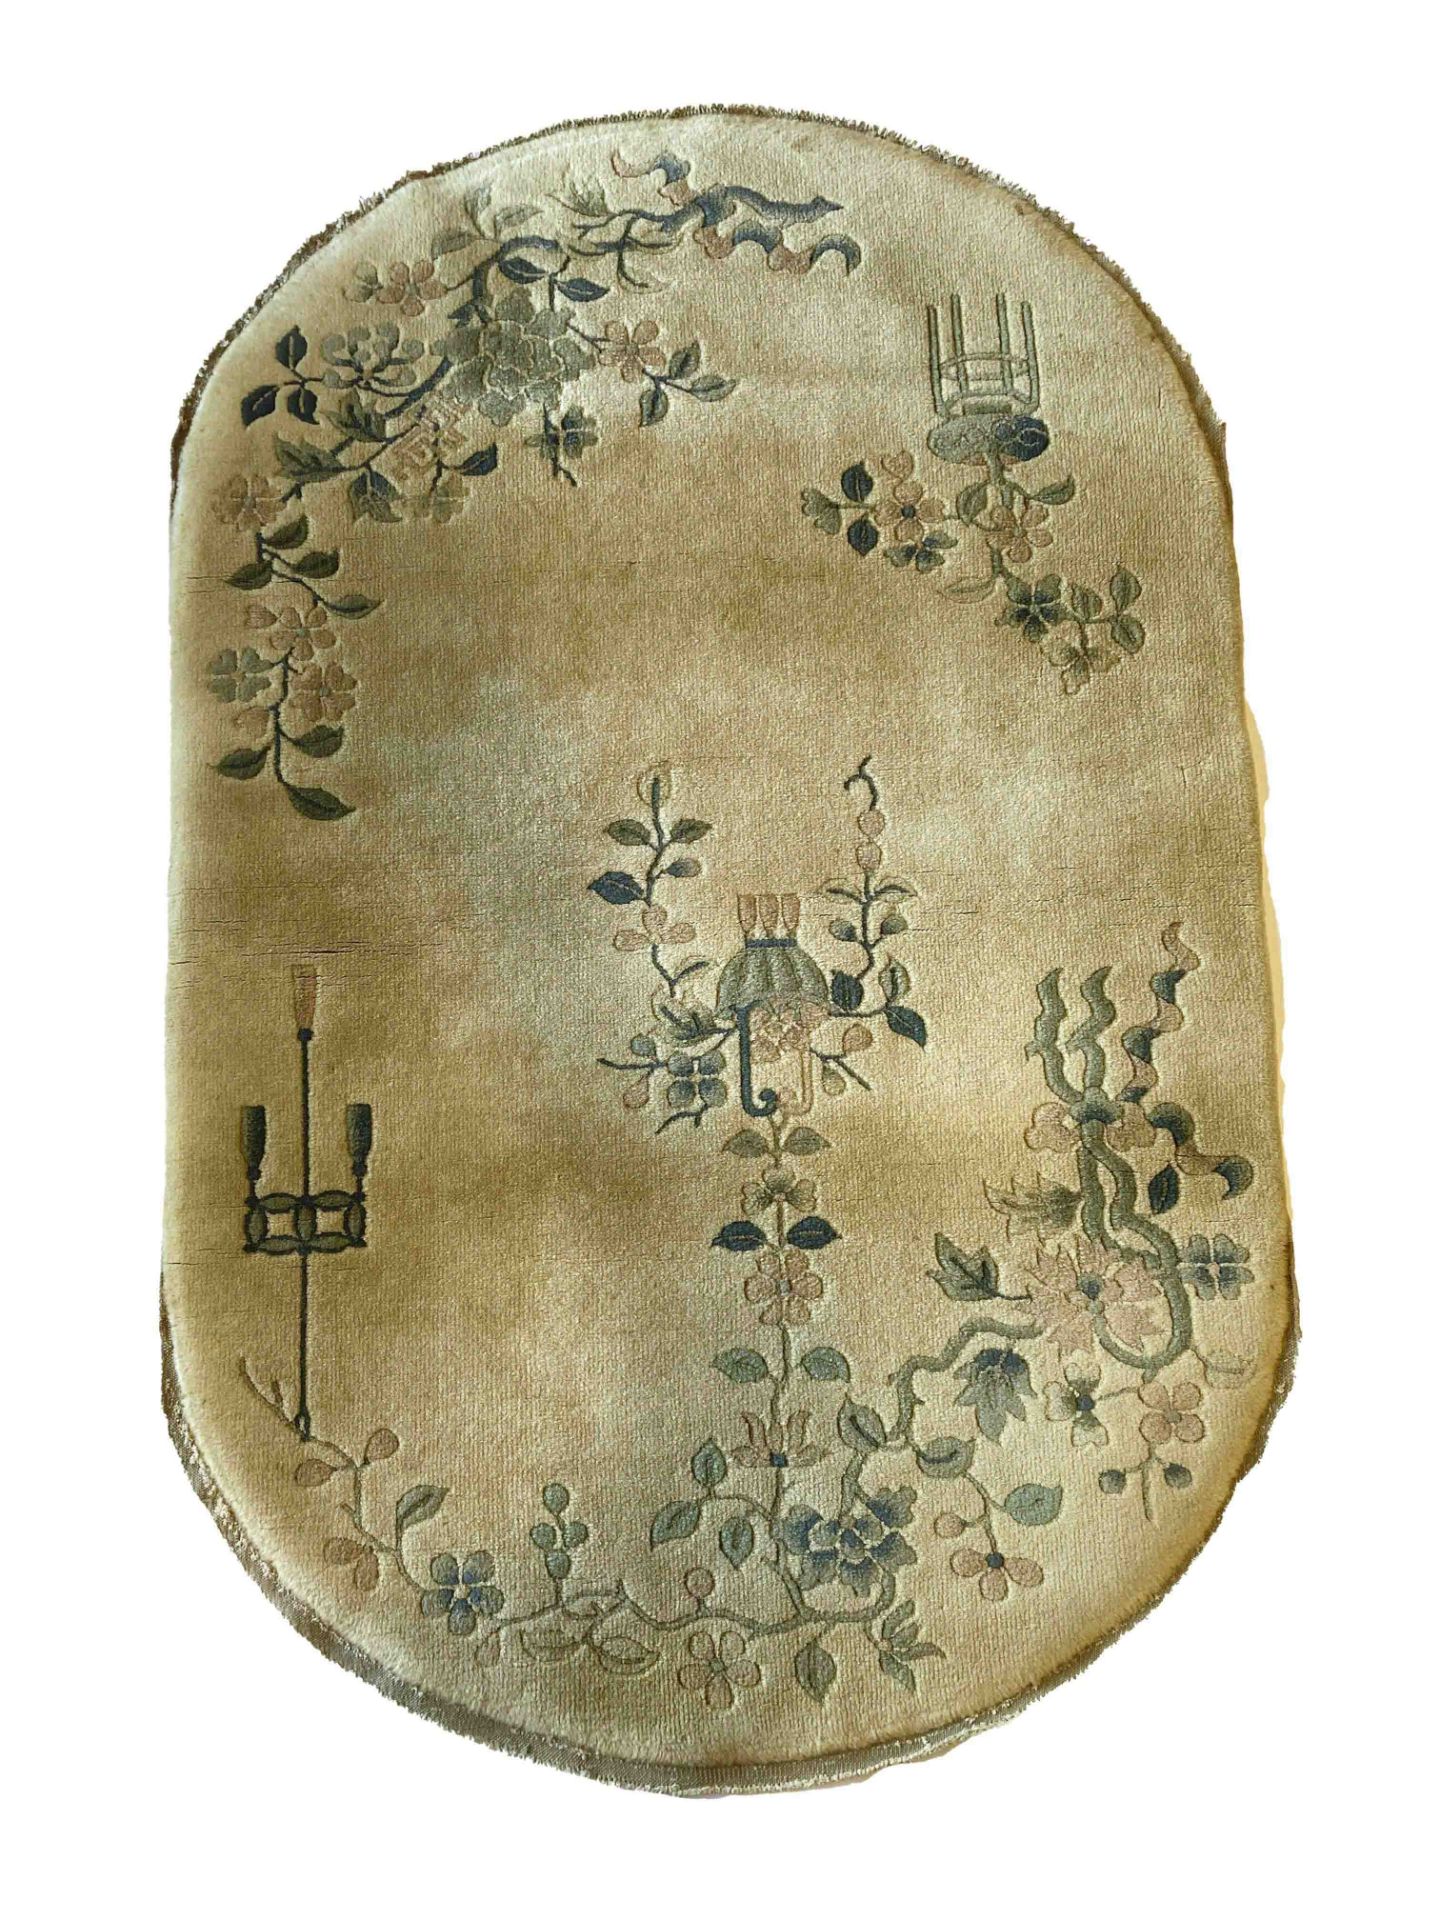 Teppich, China, minor wear, 148